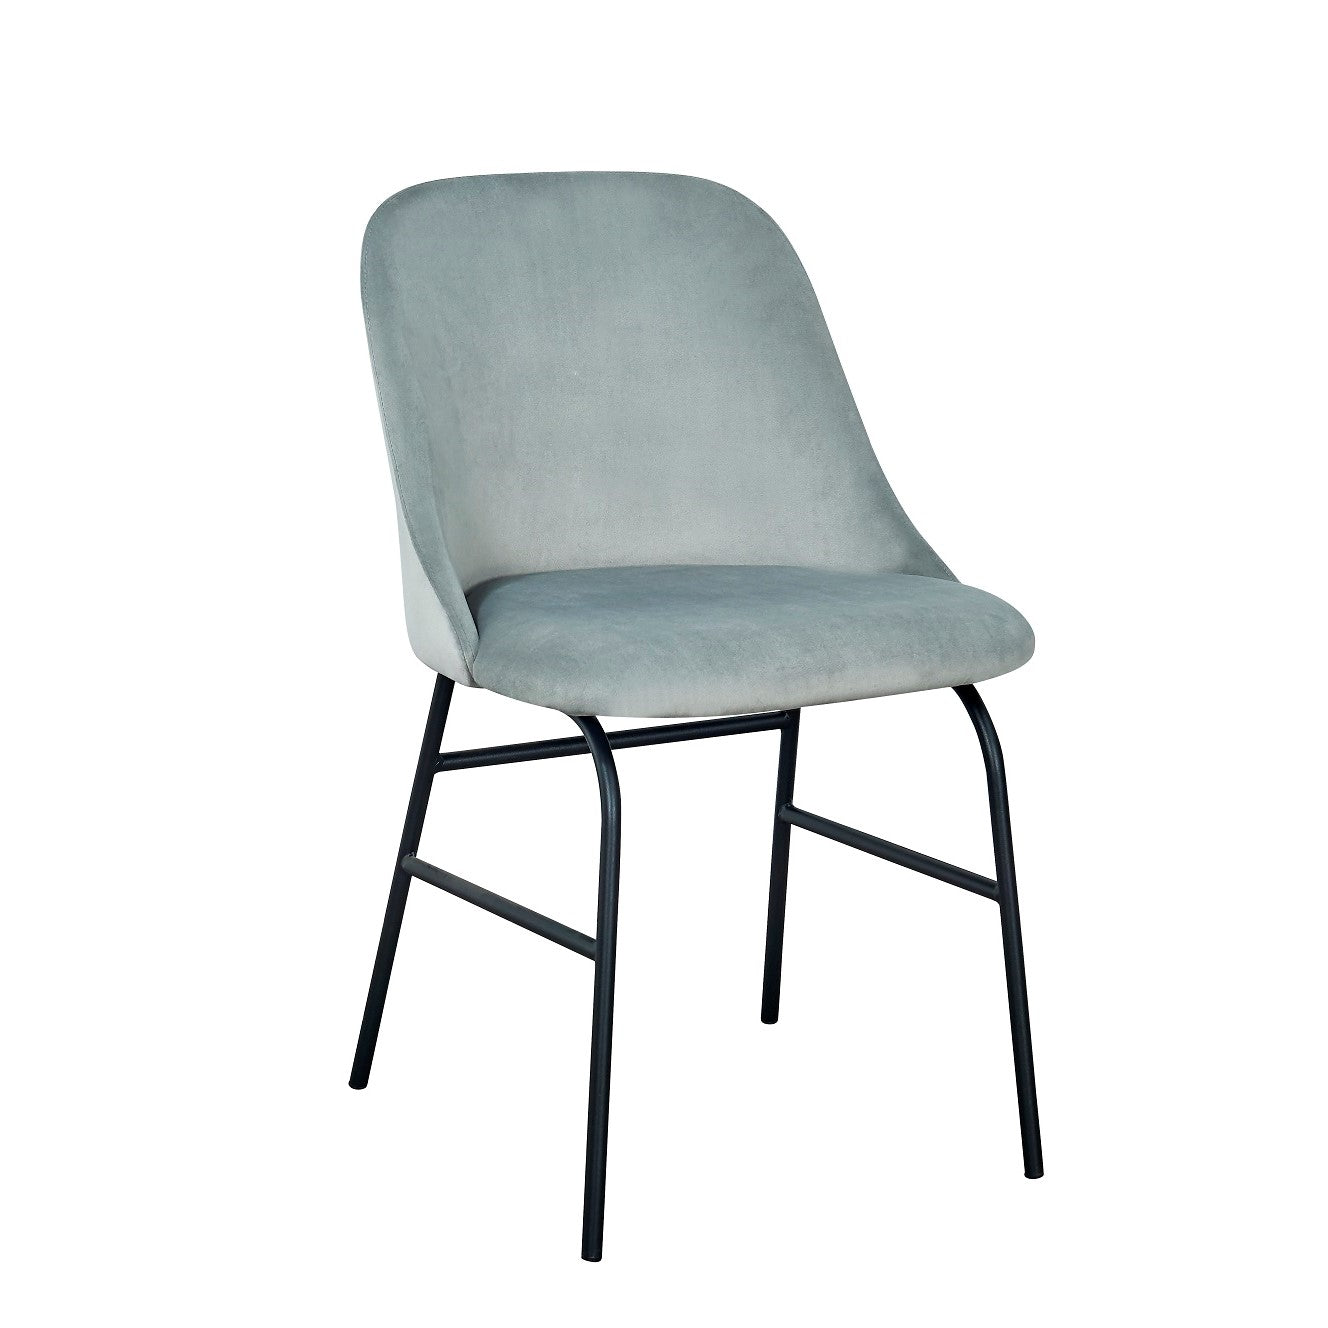 Silla de comedor de terciopelo gris Azalea - Comprar silla de comedor de terciopelo